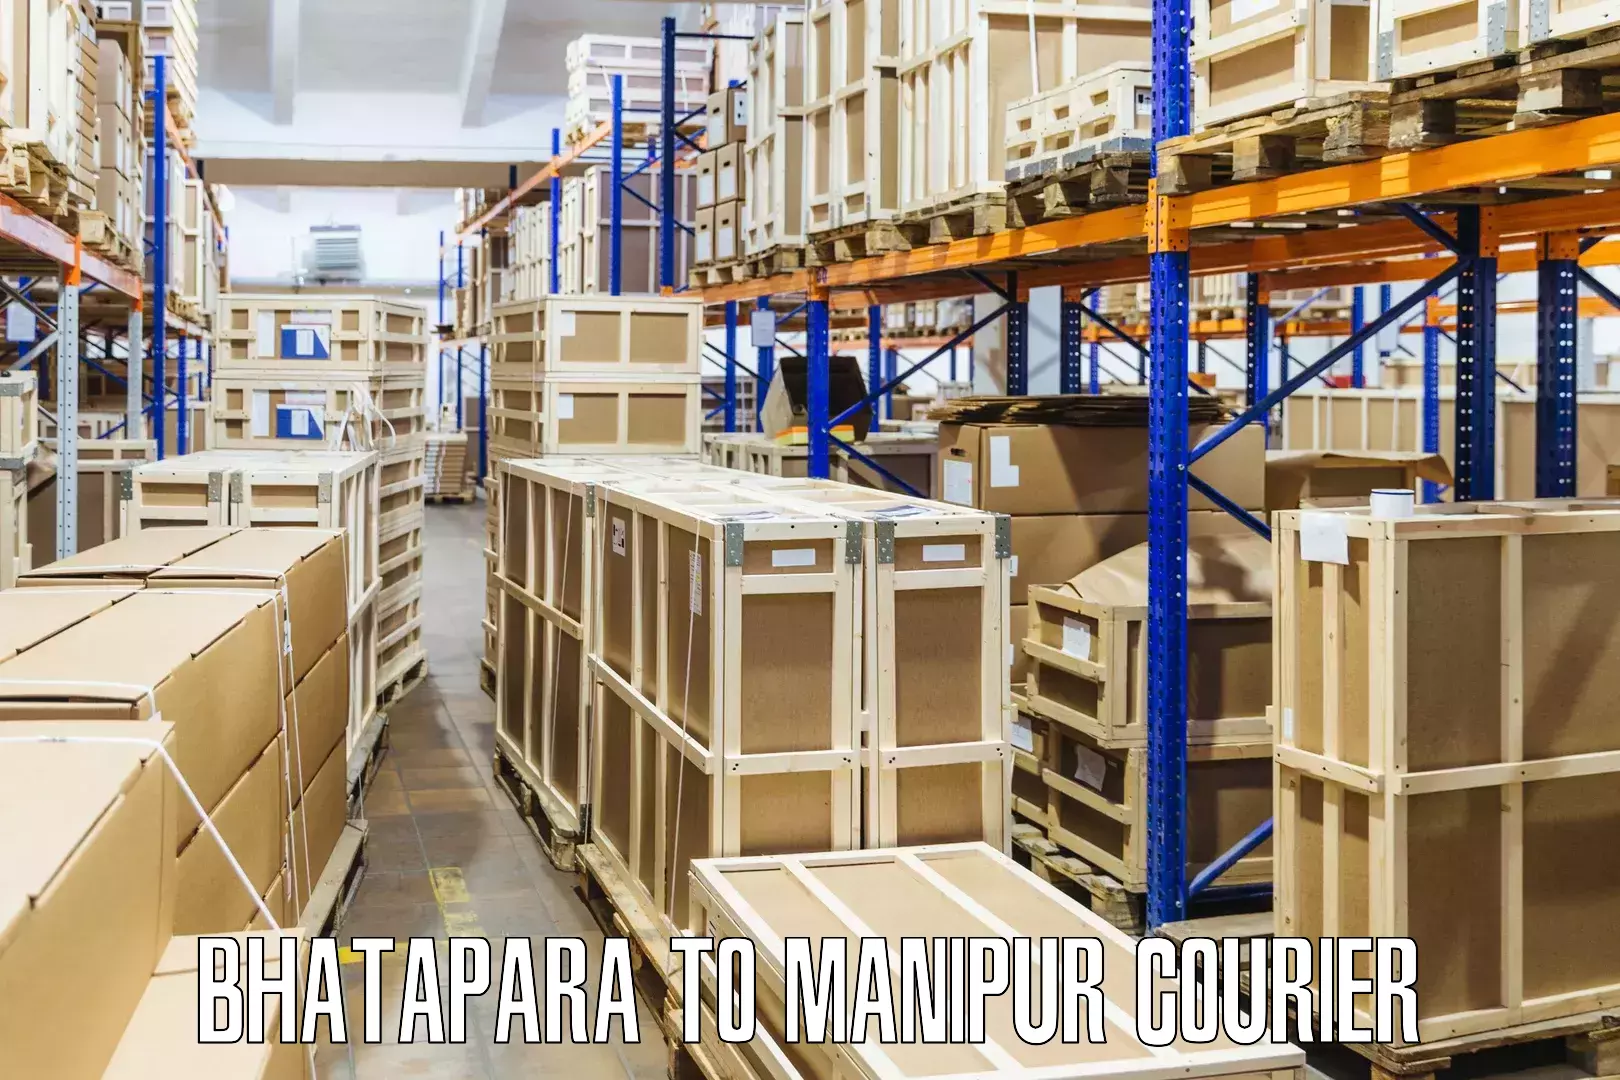 Business shipping needs Bhatapara to Ukhrul